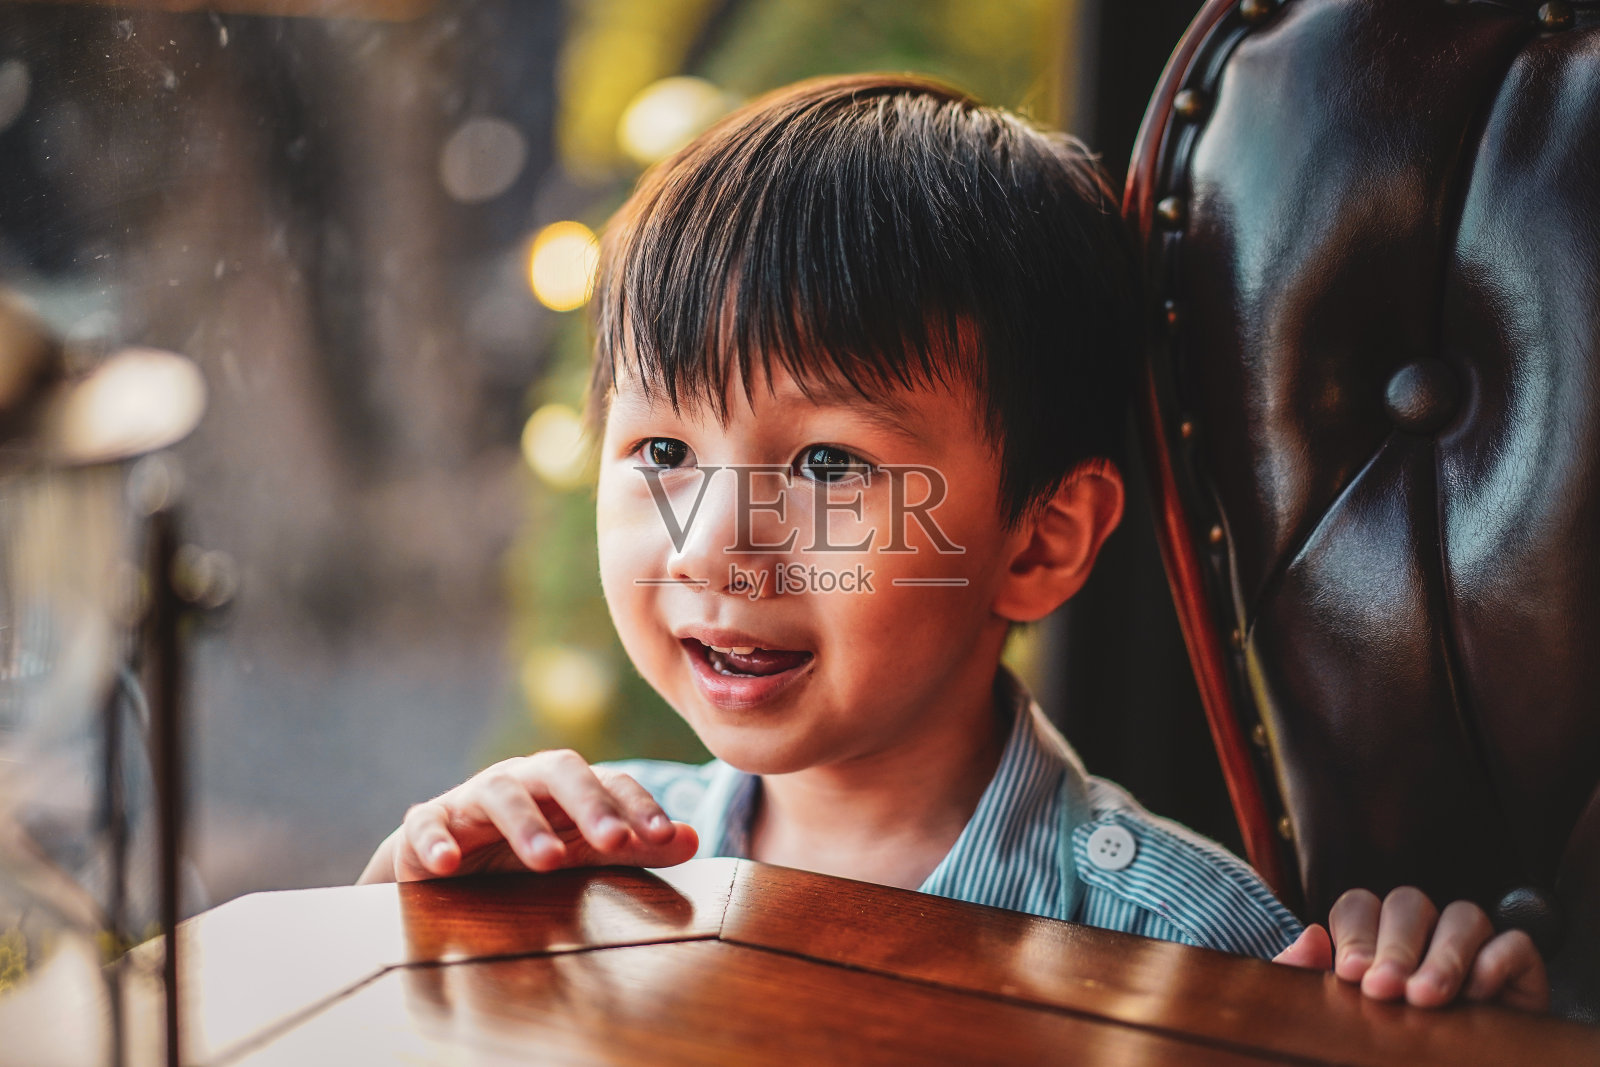 近景拍摄有趣可爱的微笑的小男孩在复古风格的房子。照片摄影图片